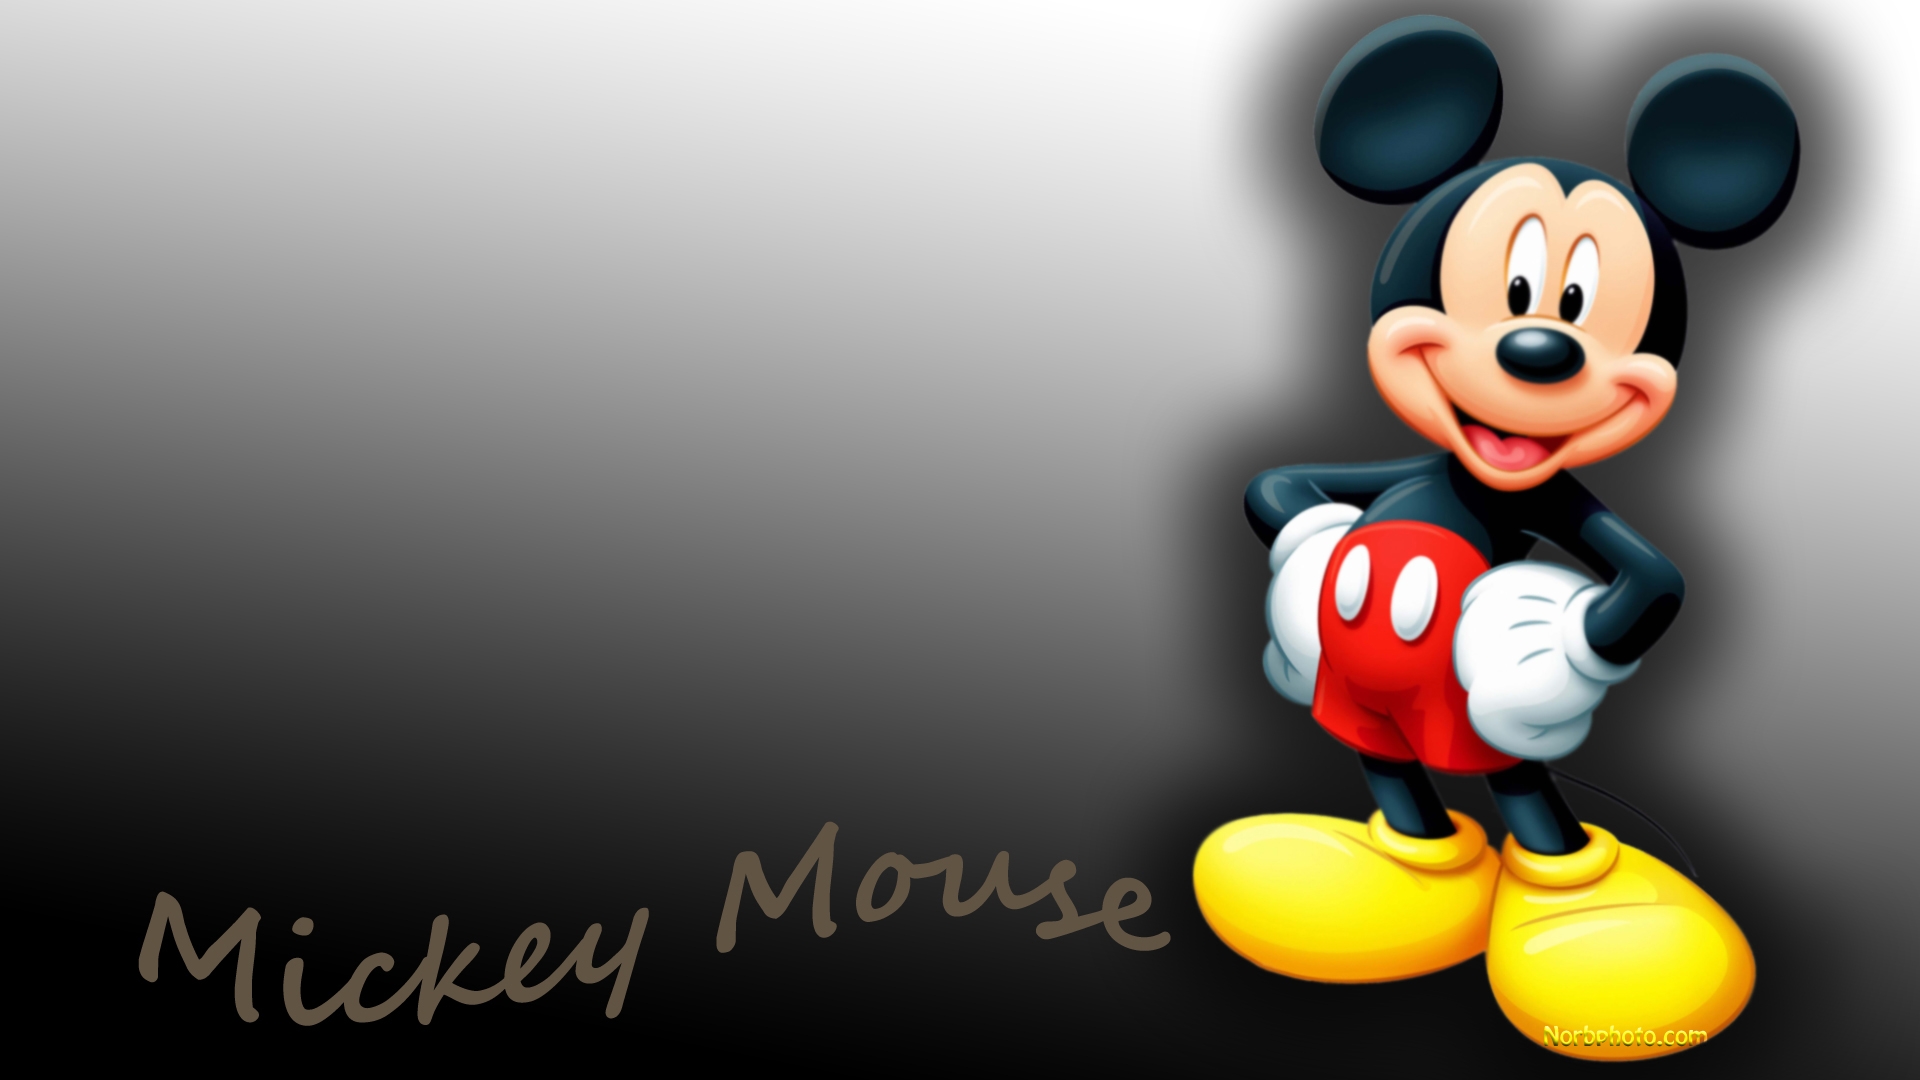 mickey mouse fond d'écran télécharger,dessin animé,dessin animé,animation,personnage fictif,jouet